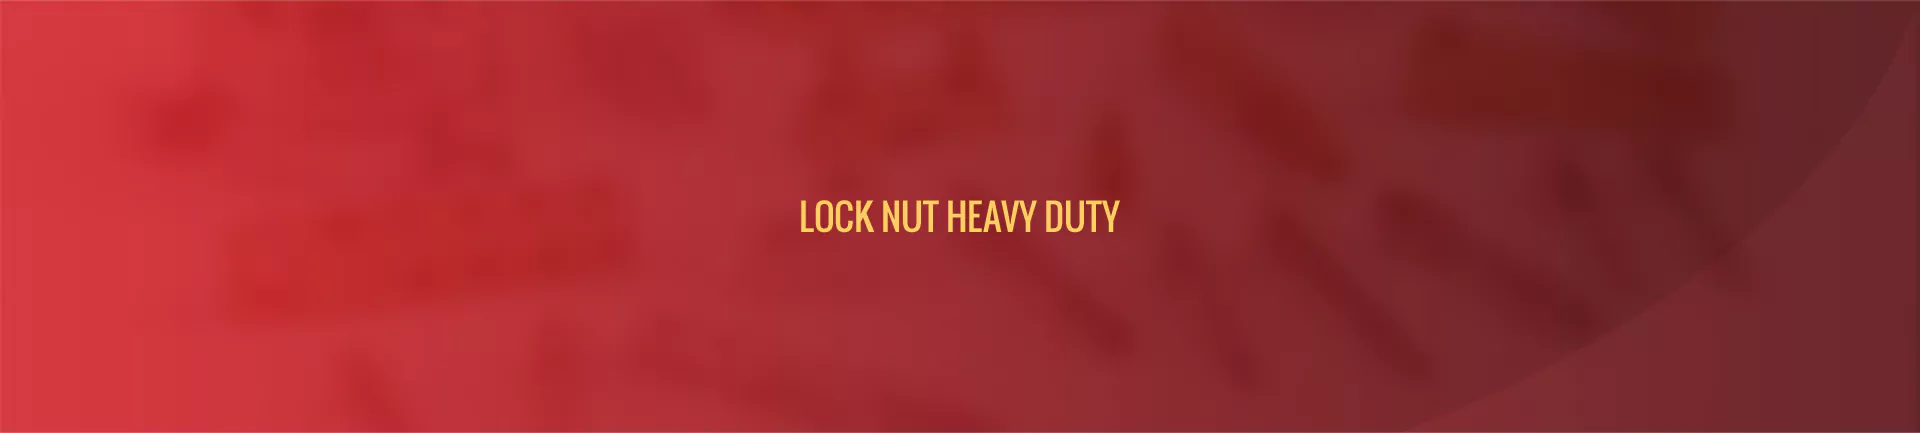 lock_nut_heavy_duty-banner